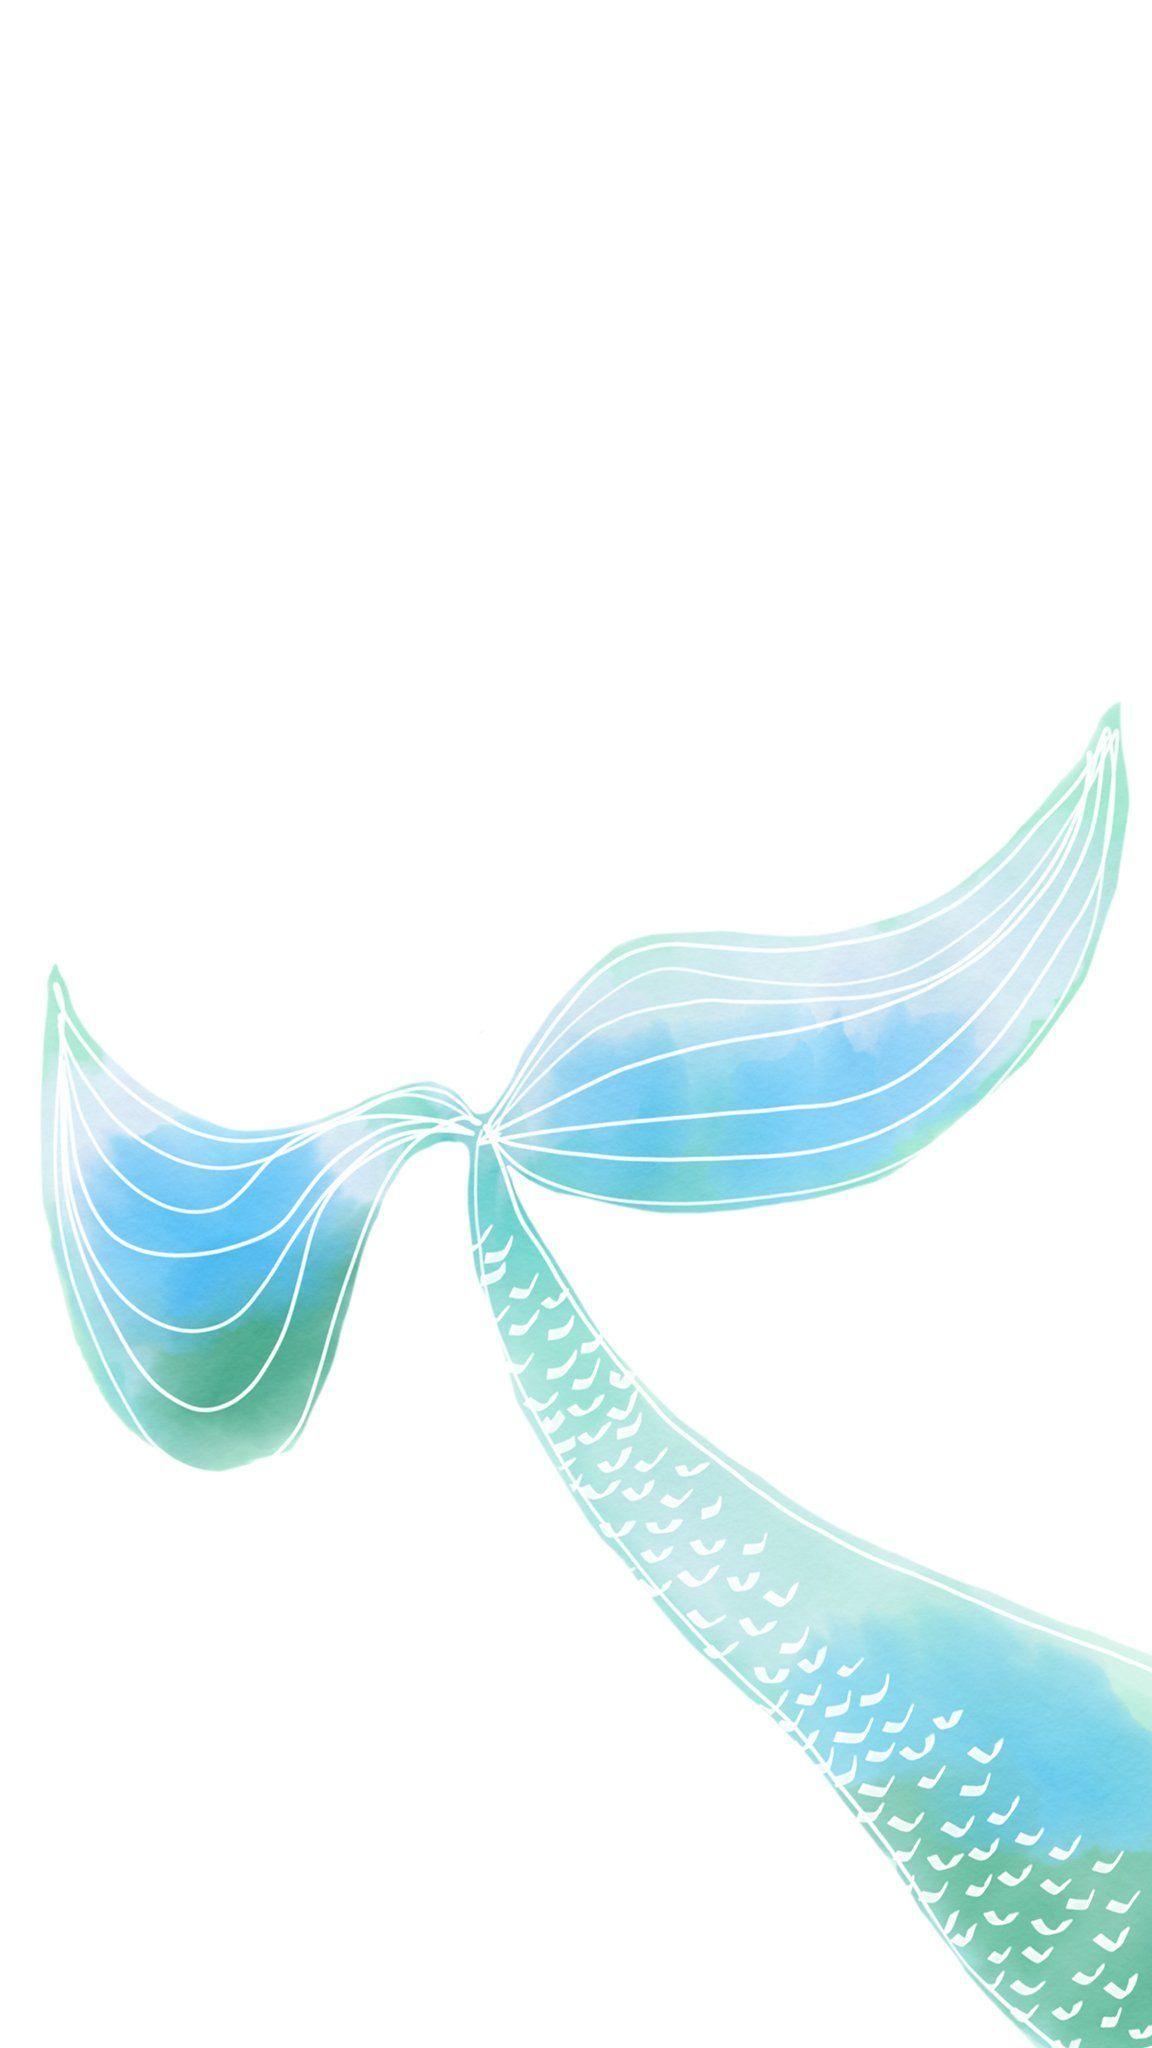 Mermaid Tail Wallpapers - Top Free